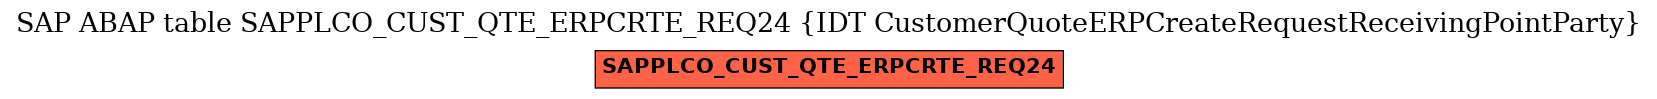 E-R Diagram for table SAPPLCO_CUST_QTE_ERPCRTE_REQ24 (IDT CustomerQuoteERPCreateRequestReceivingPointParty)